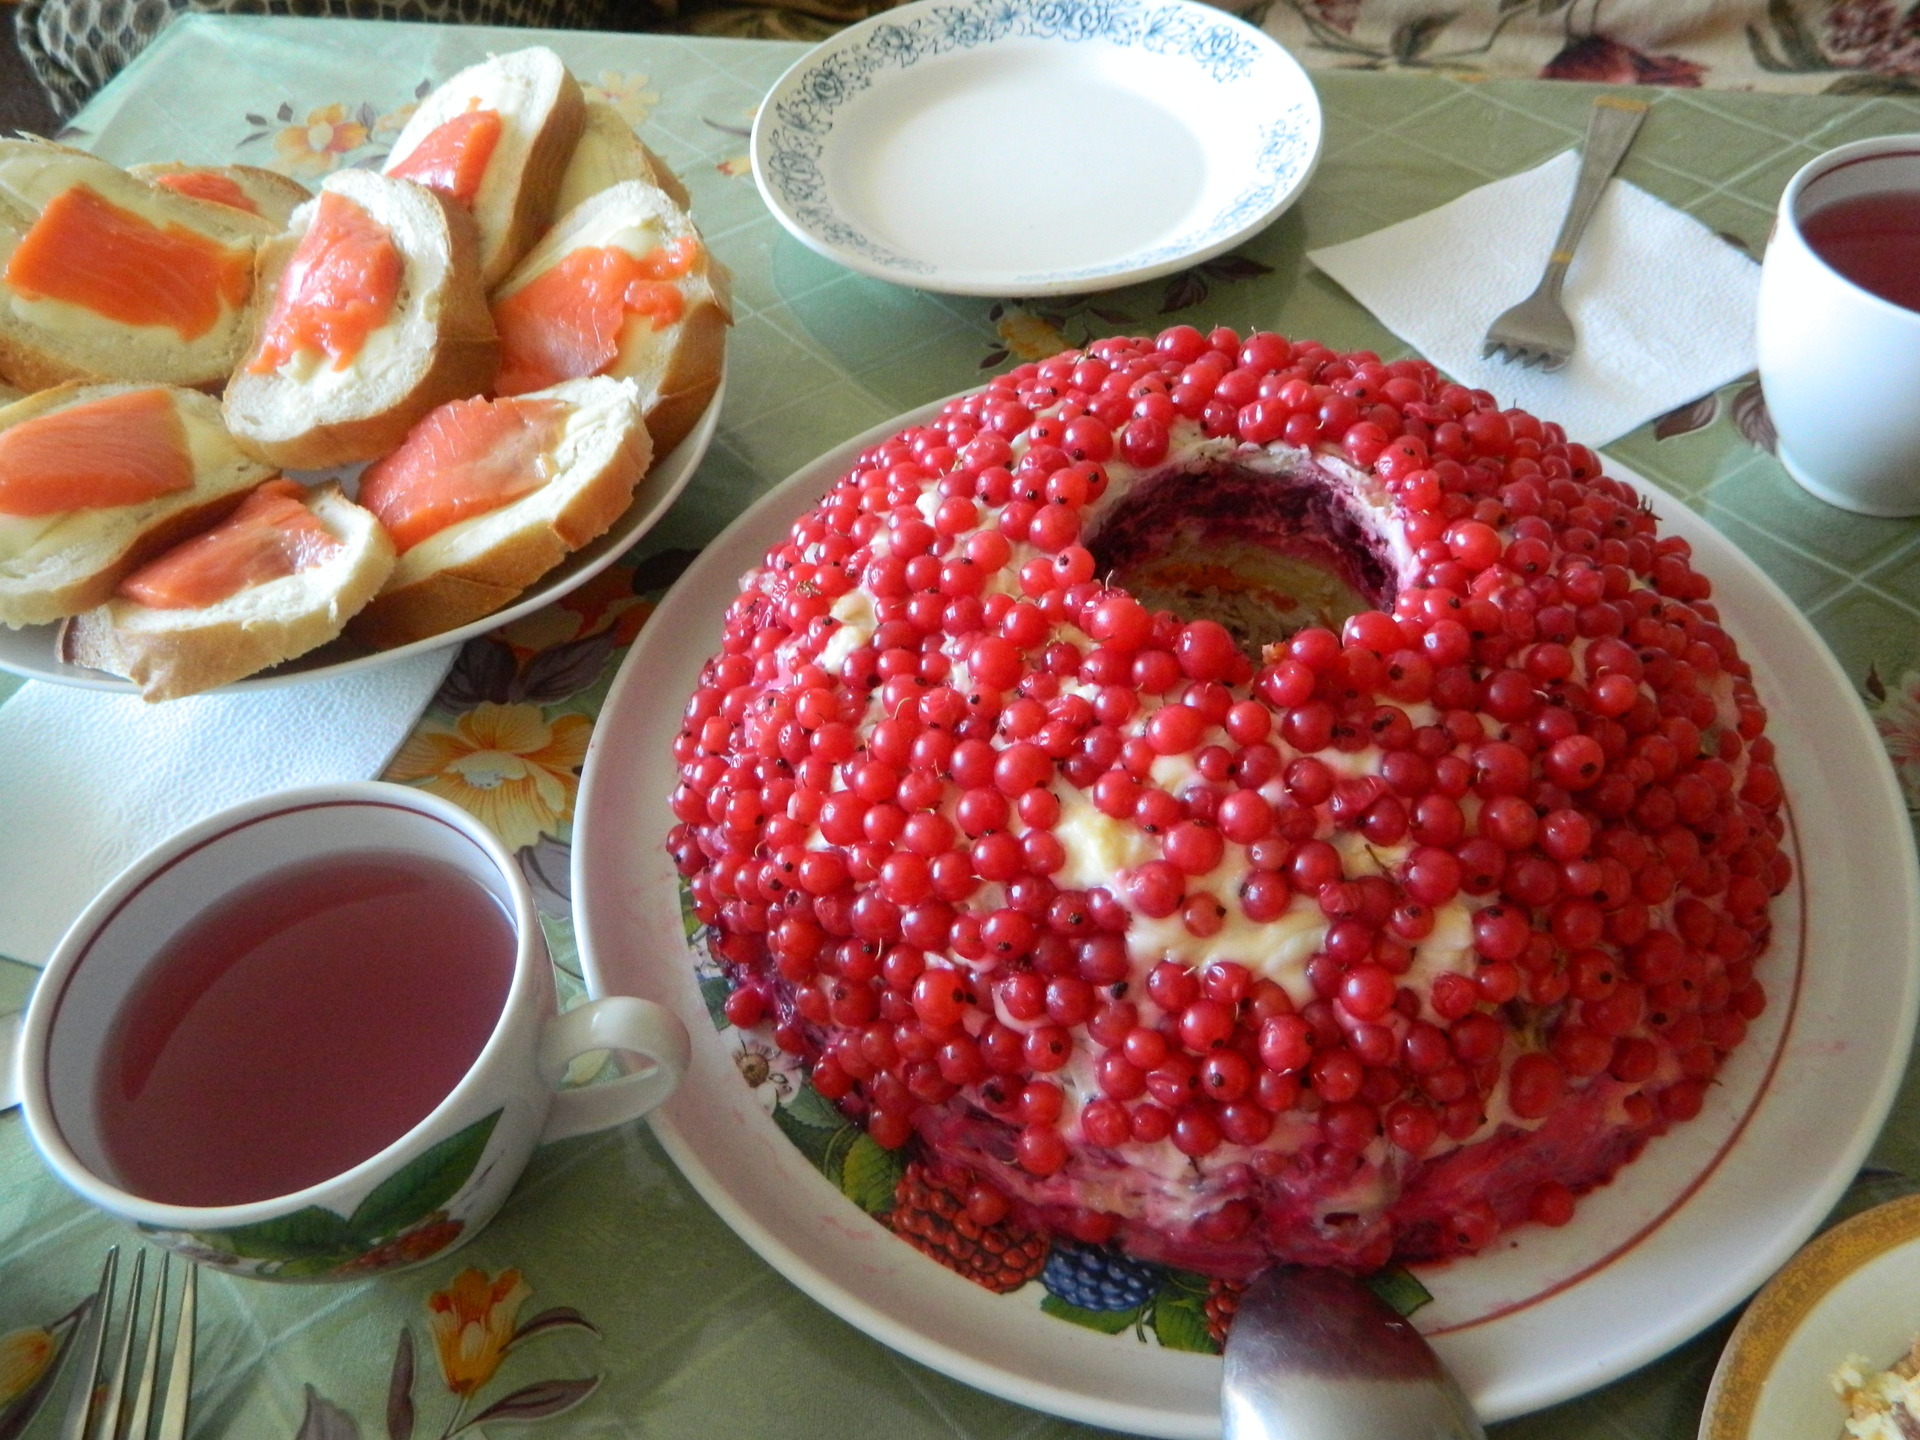 Фото к рецепту: салат "гранатовый браслет" с красной смородиной